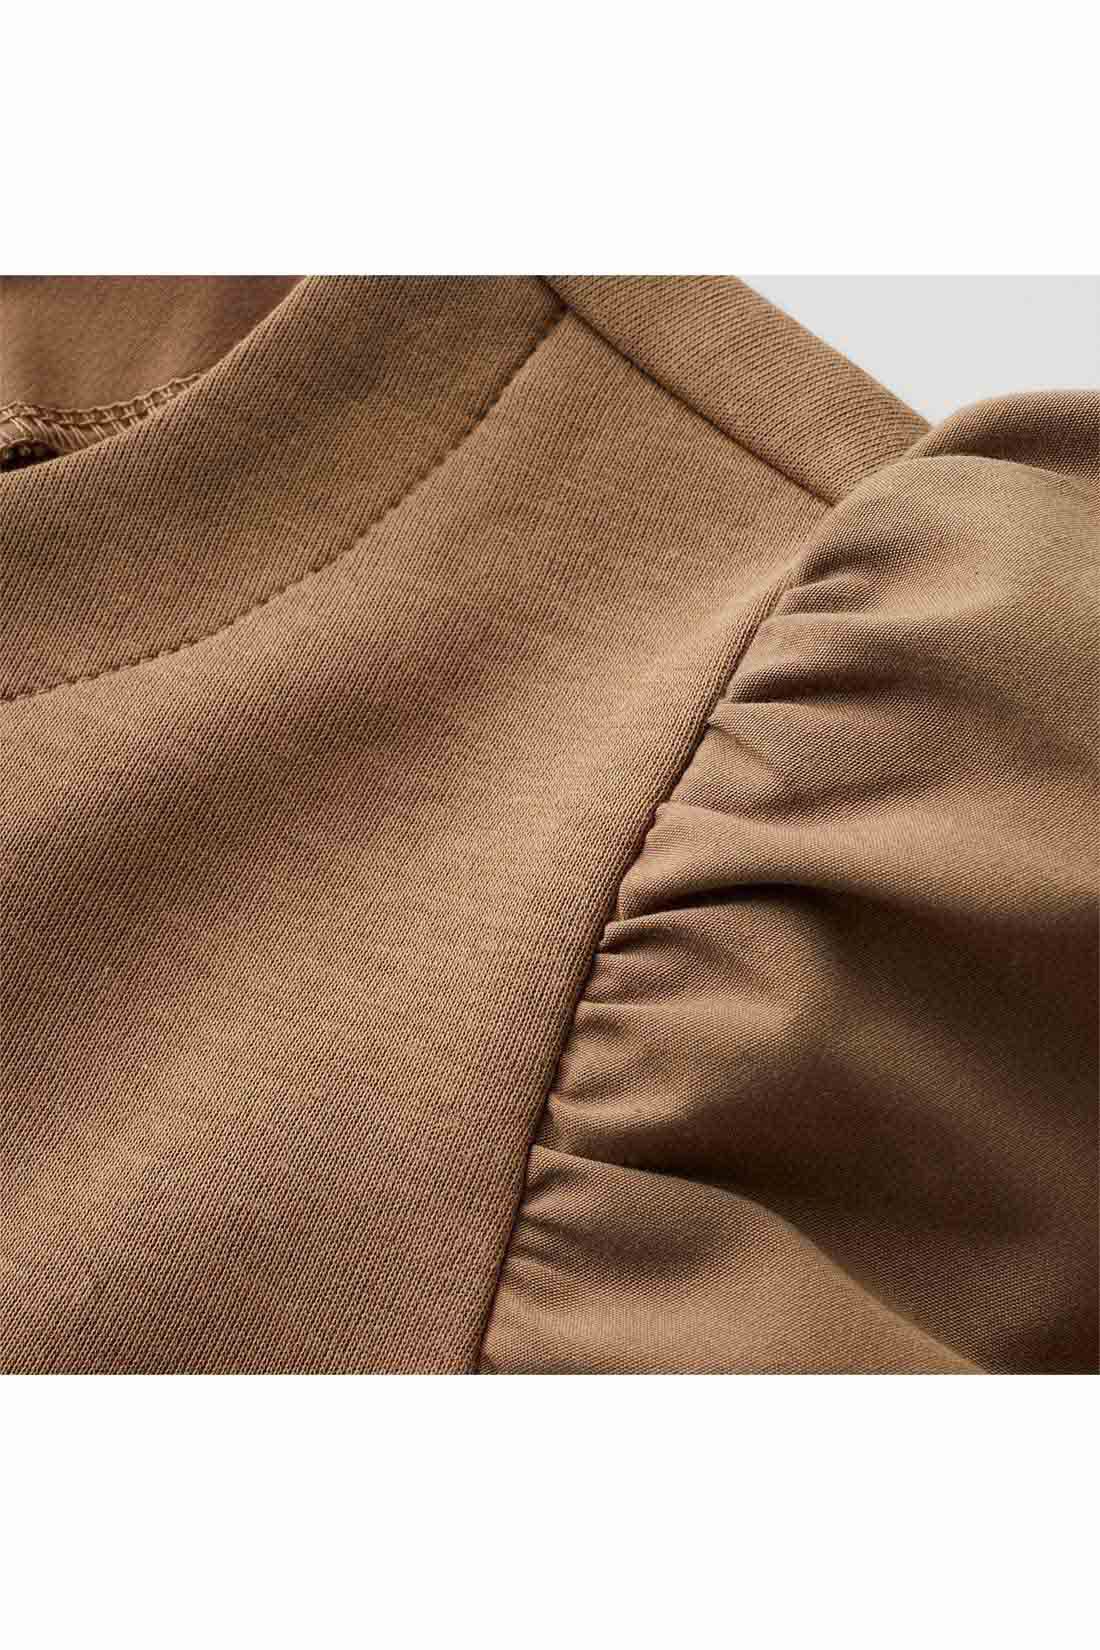 Real Stock|IEDIT[イディット]　ふんわり袖デザインが華やかな 異素材切り替えプルオーバー〈モカ〉|袖は張り感のある布はく素材で軽やかに。身ごろはほどよく厚みがあり表面感のきれいなカットソー素材。